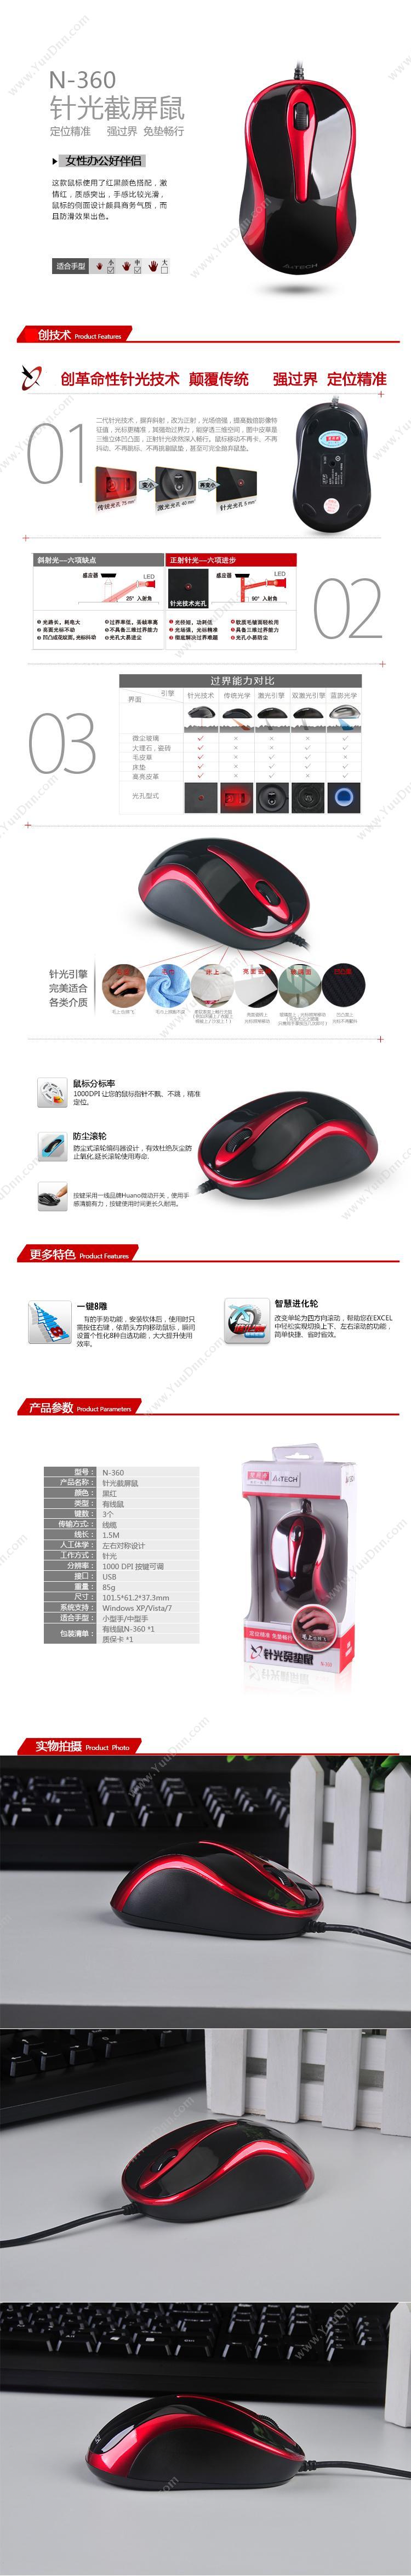 双飞燕 N-360-2 USB  红(黑） 有线鼠标